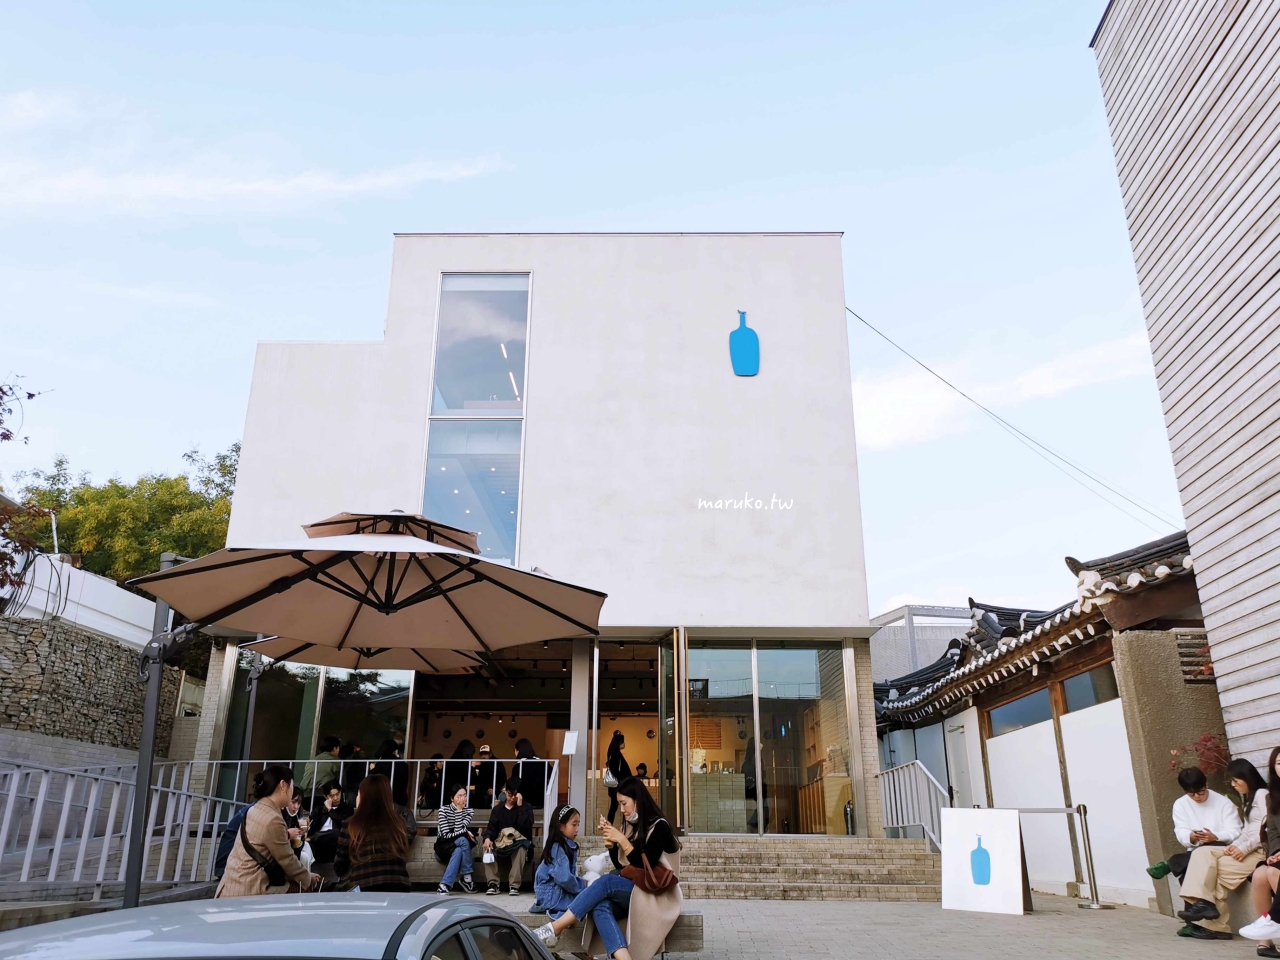 【首爾】Blue Bottle 藍瓶咖啡 可眺望景福宮與韓屋村的三清洞店、工業風聖水洞店、明洞店 @Maruko與美食有個約會